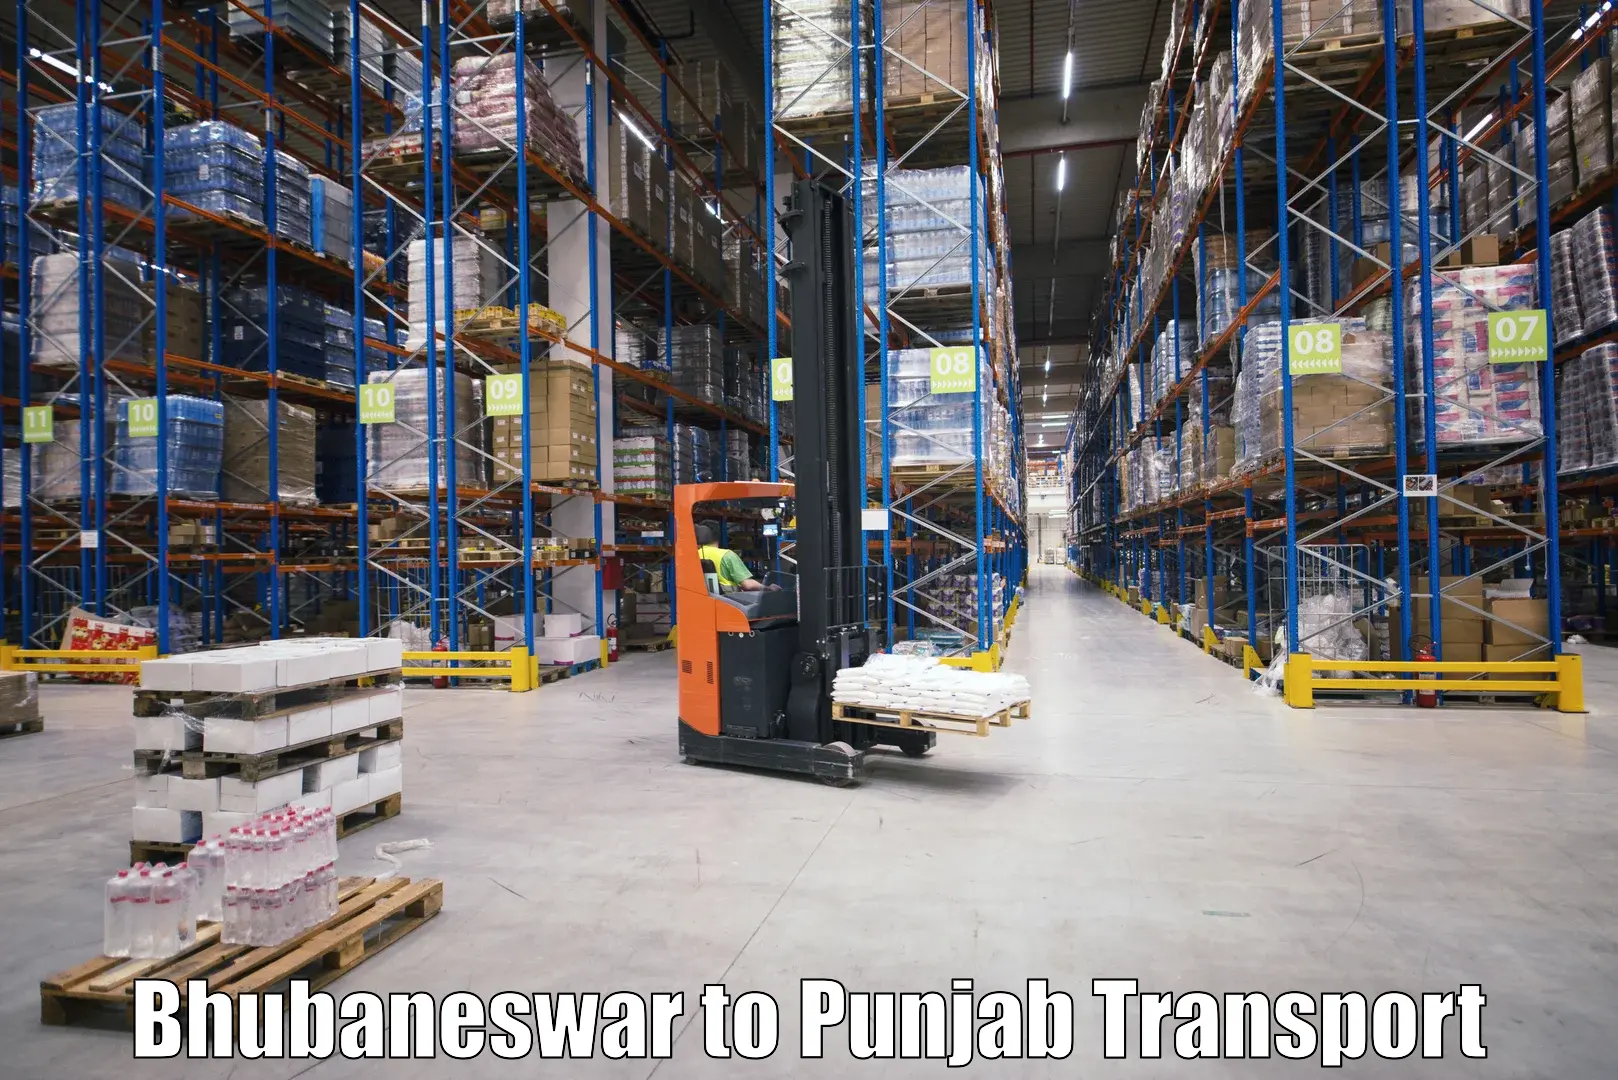 Commercial transport service Bhubaneswar to Tarsikka